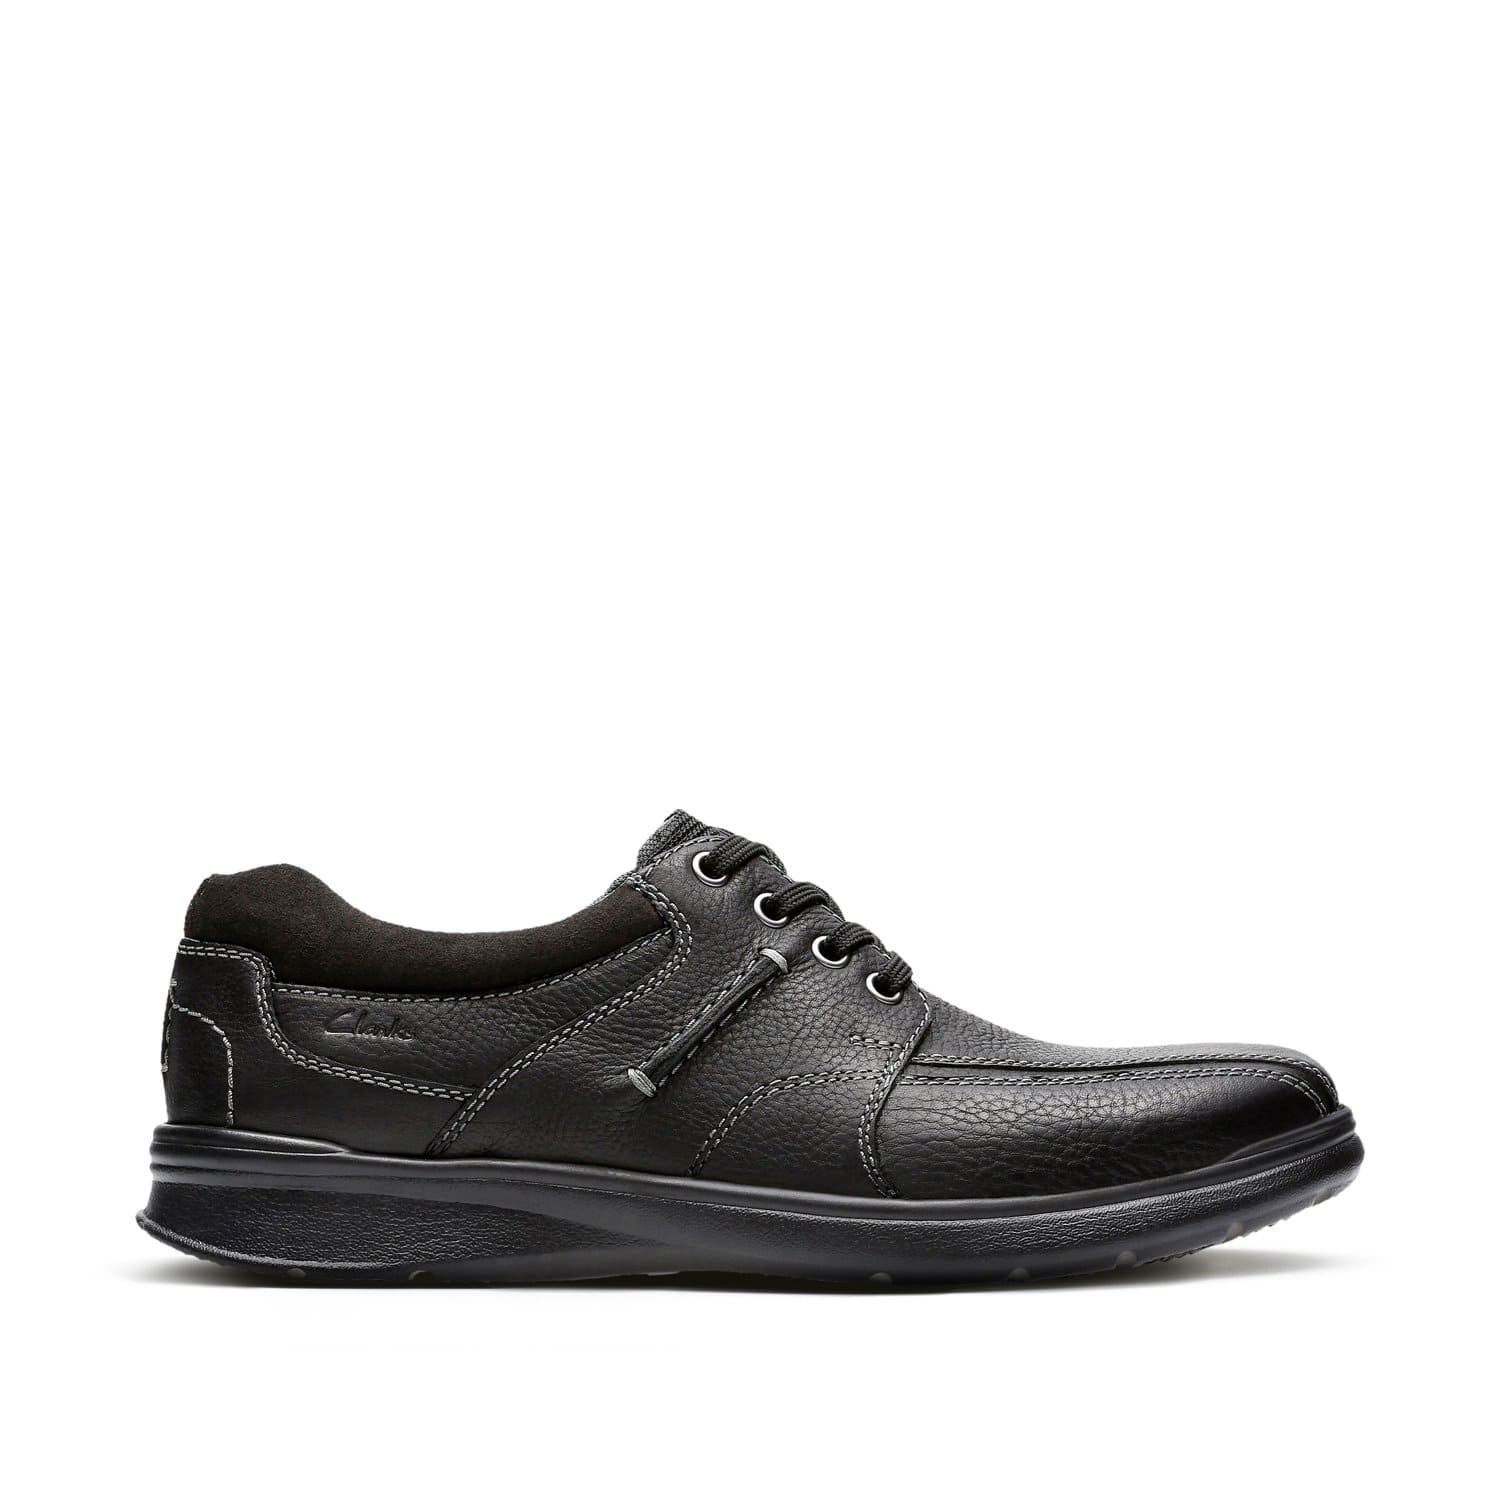 كلاركس - كوتريل - ووك - أحذية رجالية - أسود - زيتي - جلد - 26119725